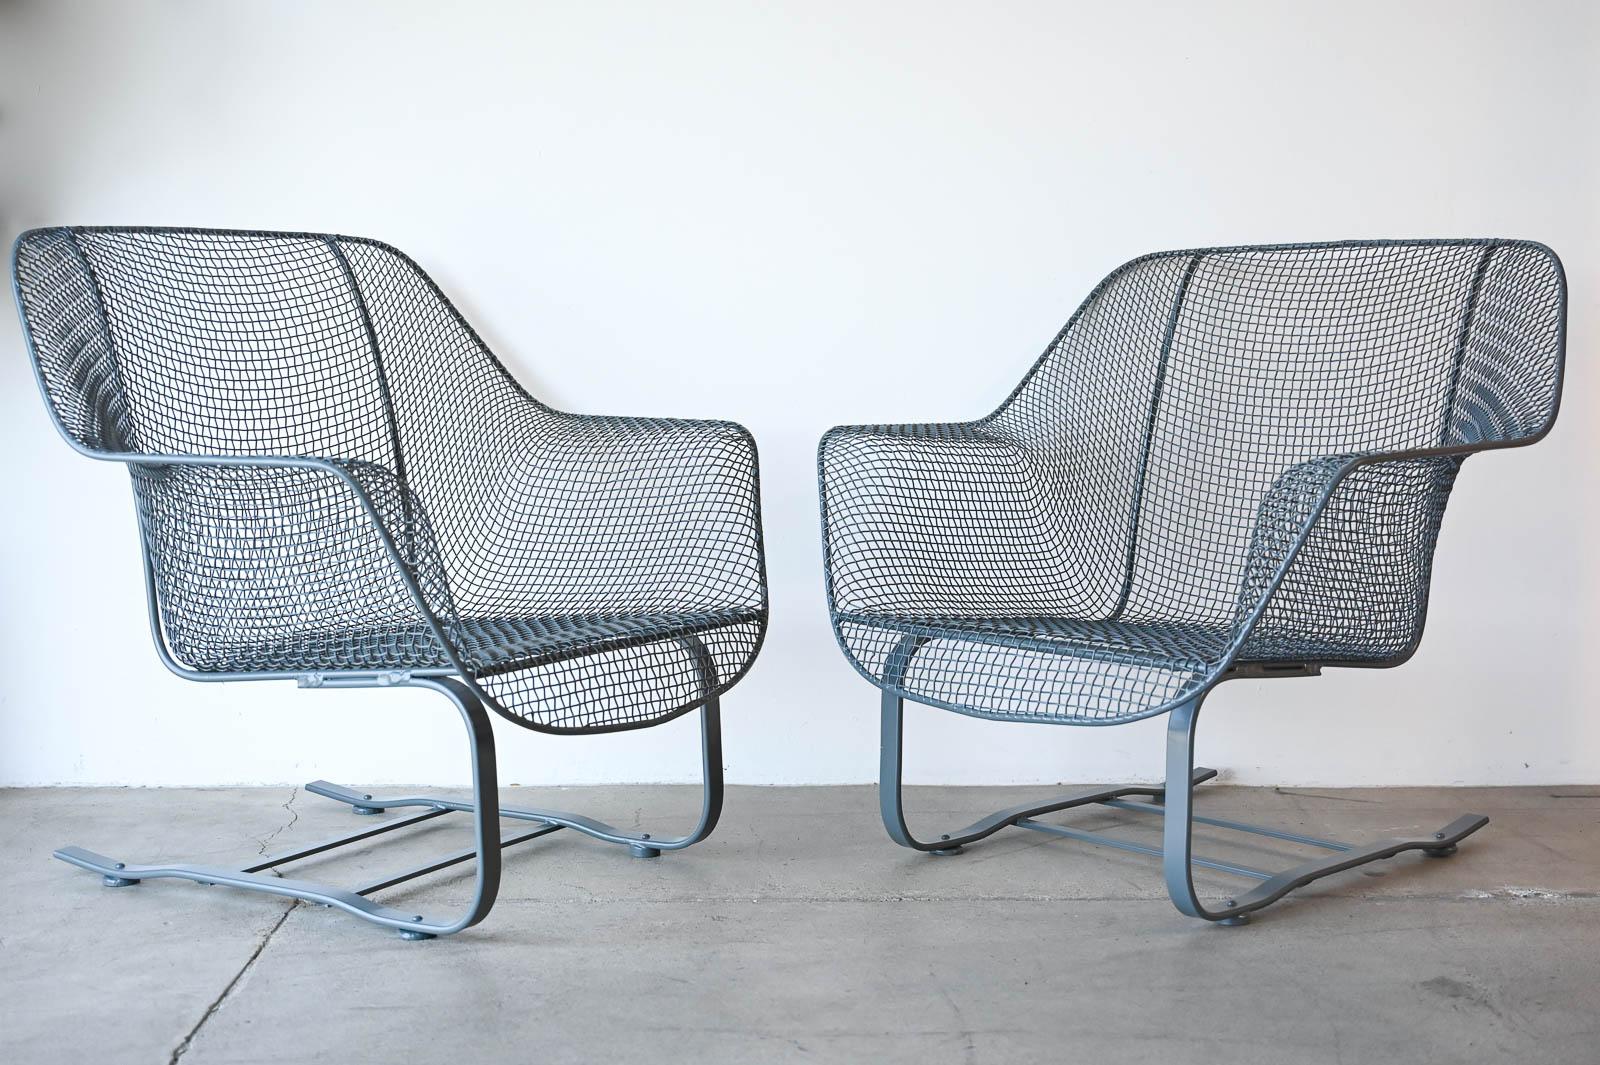 Russell Woodard Sculptura Springer Lounge Chairs, ca. 1950.  Originalpaar der seltenen, schwer zu findenden Lounge Chair Version seines beliebten Springer Designs.  Superbequeme, tiefe Sitzfläche mit freitragender Basis.  Professionell restauriert